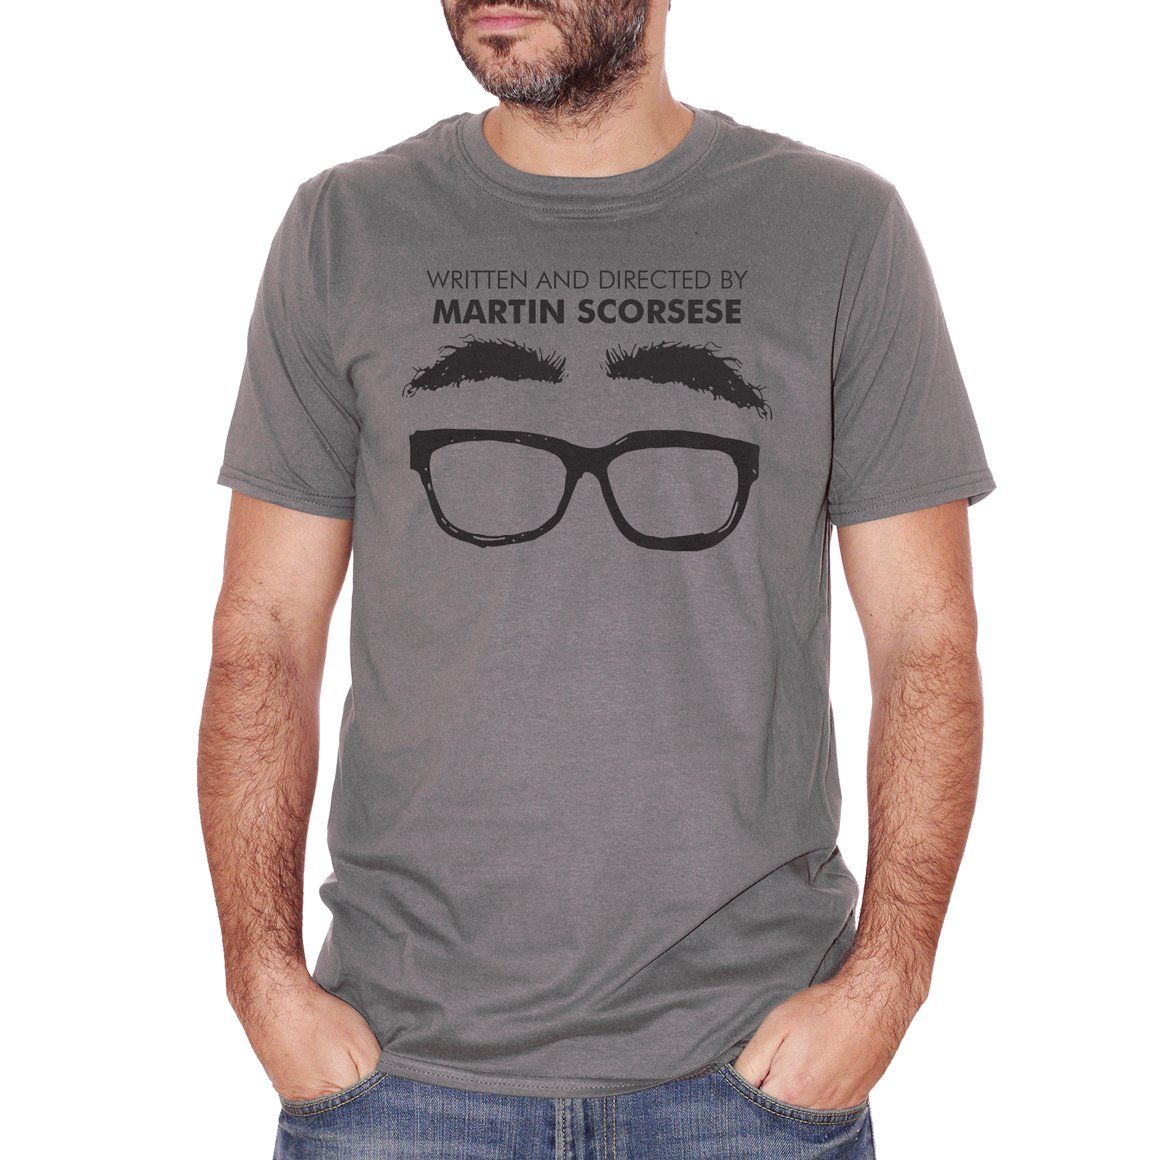 Dim Gray T-Shirt Scritto e diretto da Martin Scorsese - Netflix Irishman FILM CucShop